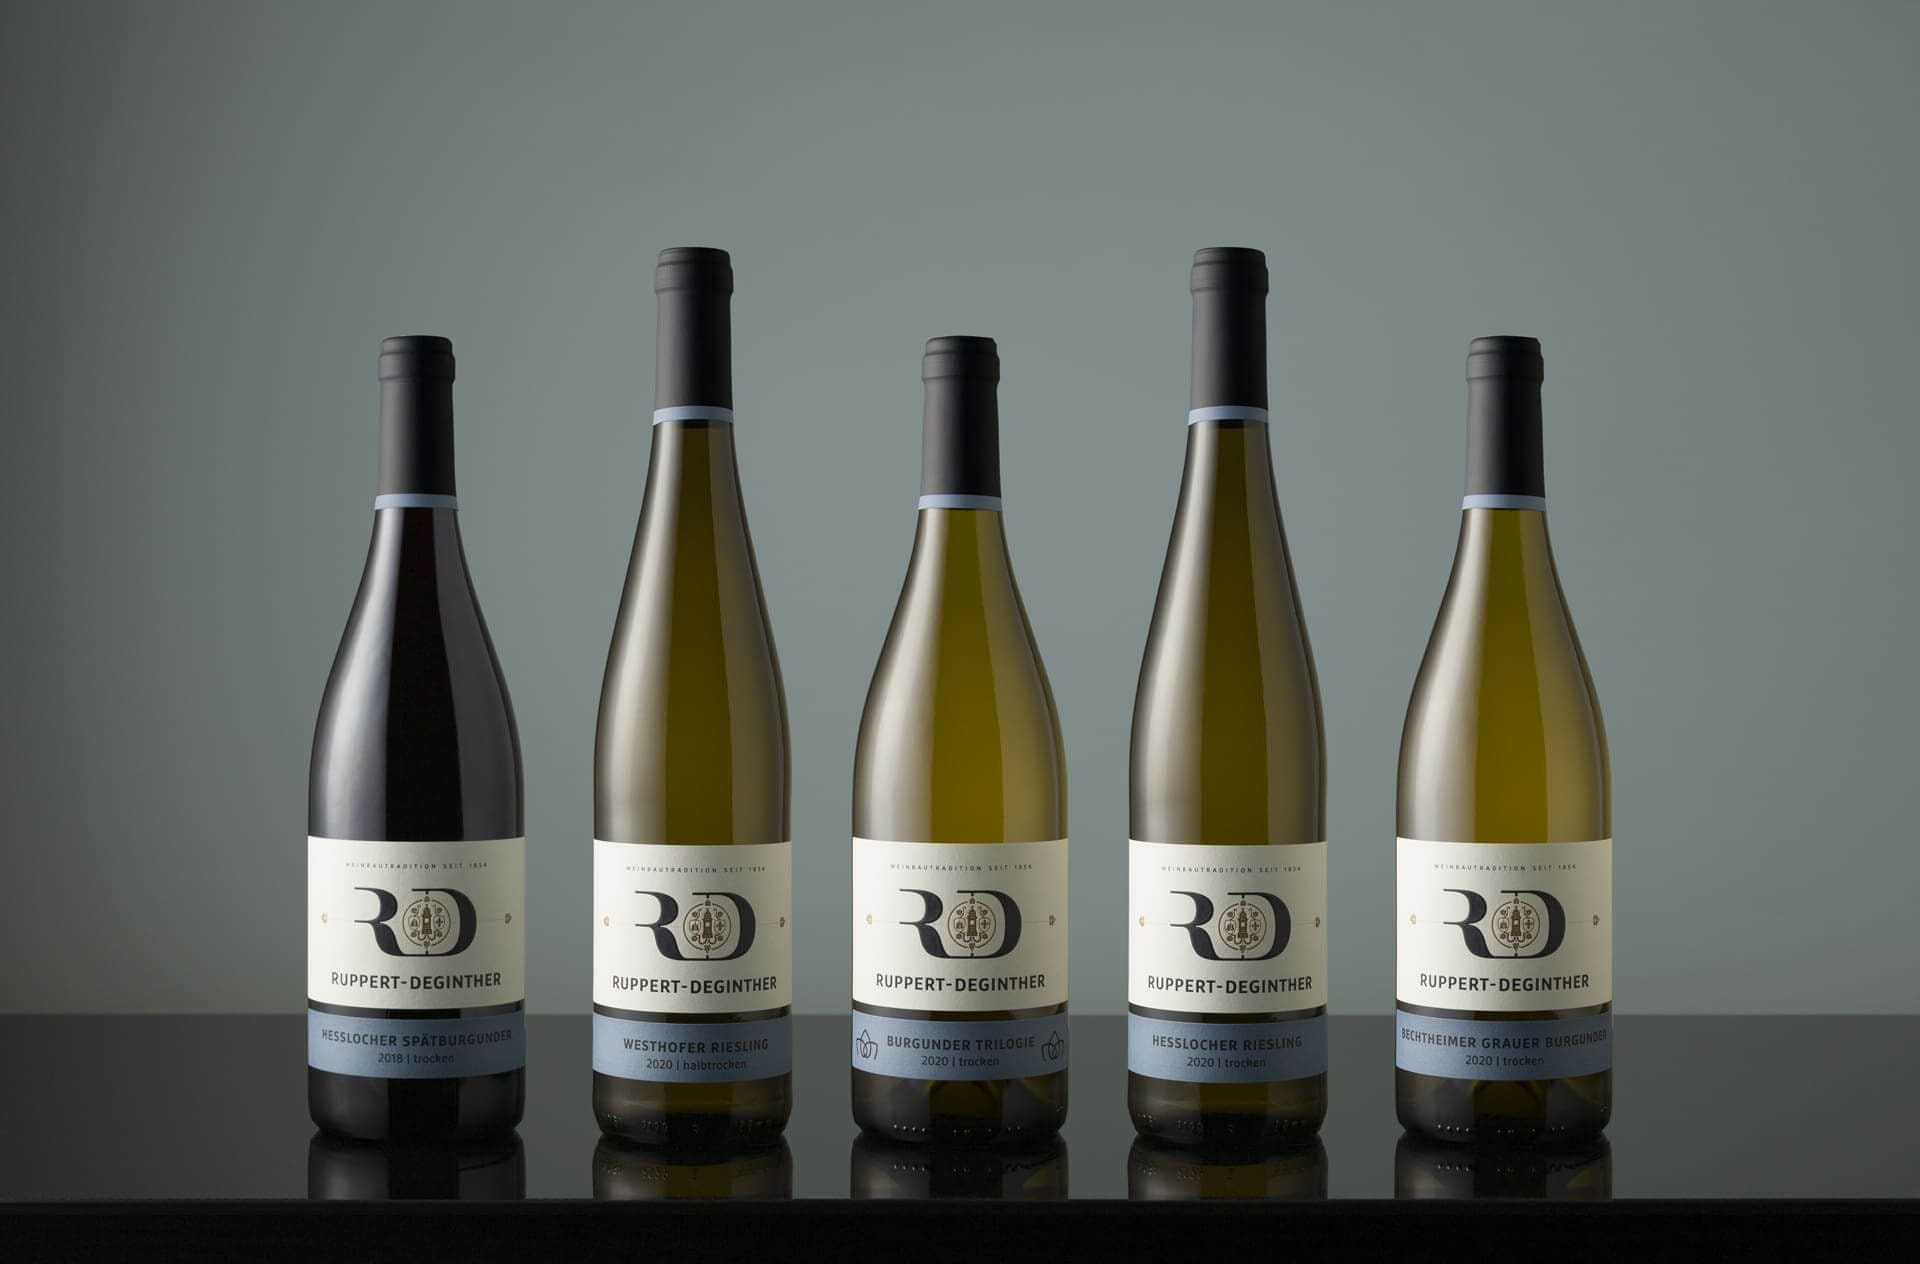 Corporate Identity Design für Ruppert-Deginther | Ein ausgezeichnetes Weingut in Rheinhessen | Produkt-Fotoshooting der Ortsweine